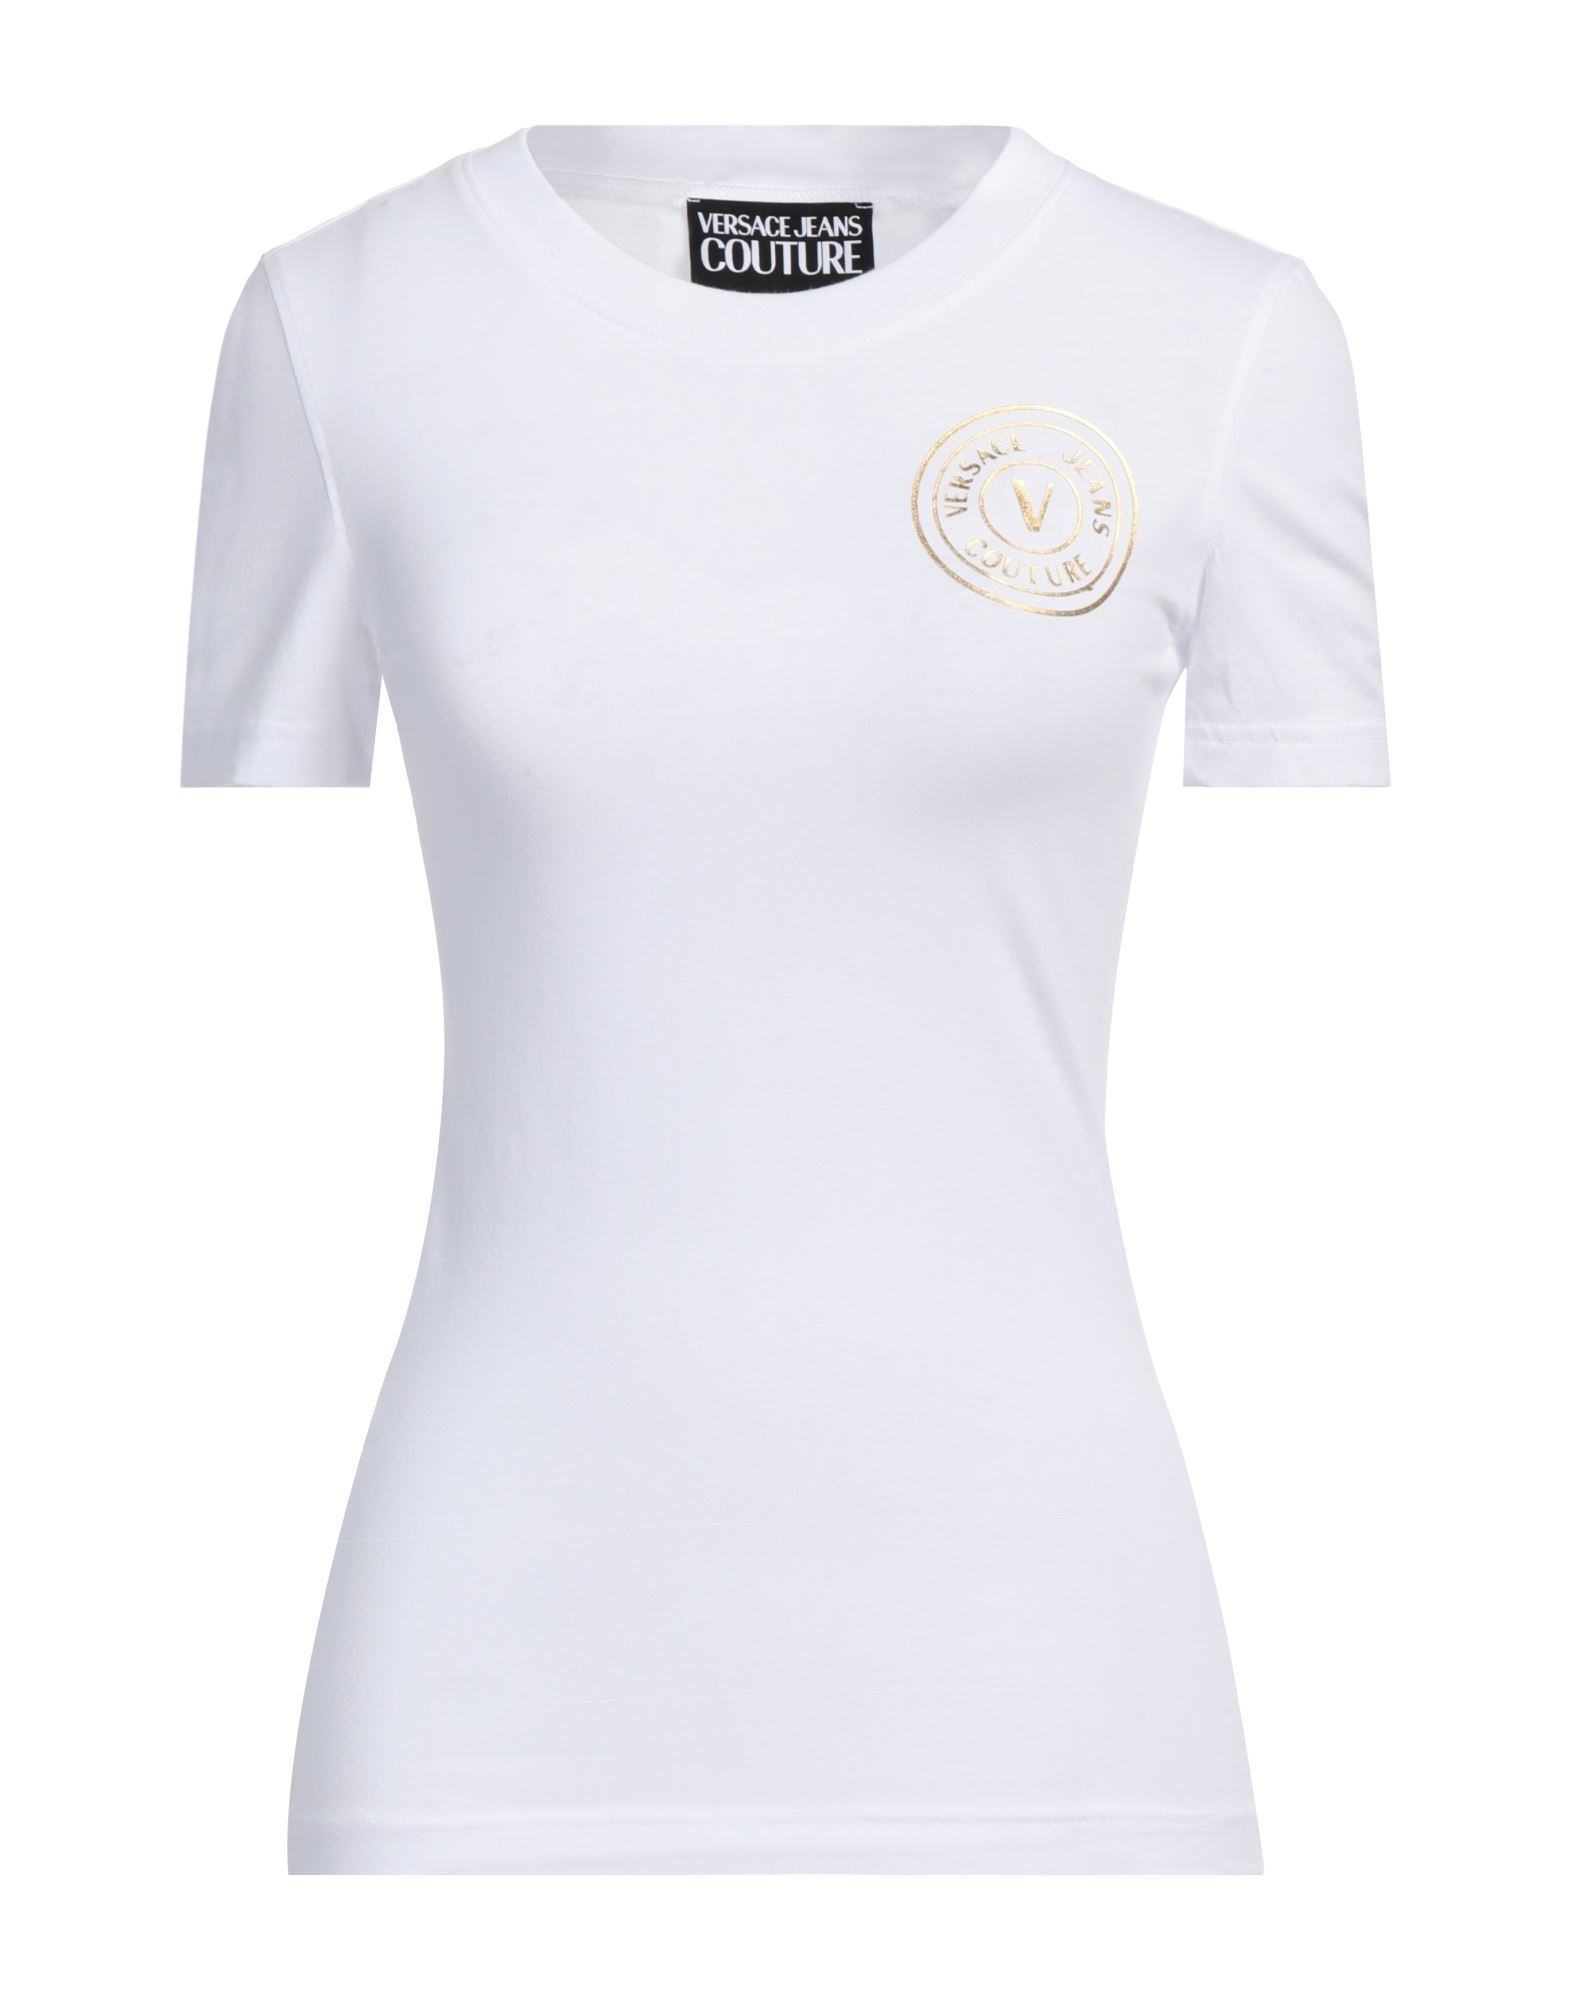 VERSACE JEANS COUTURE T-shirts Damen Weiß von VERSACE JEANS COUTURE